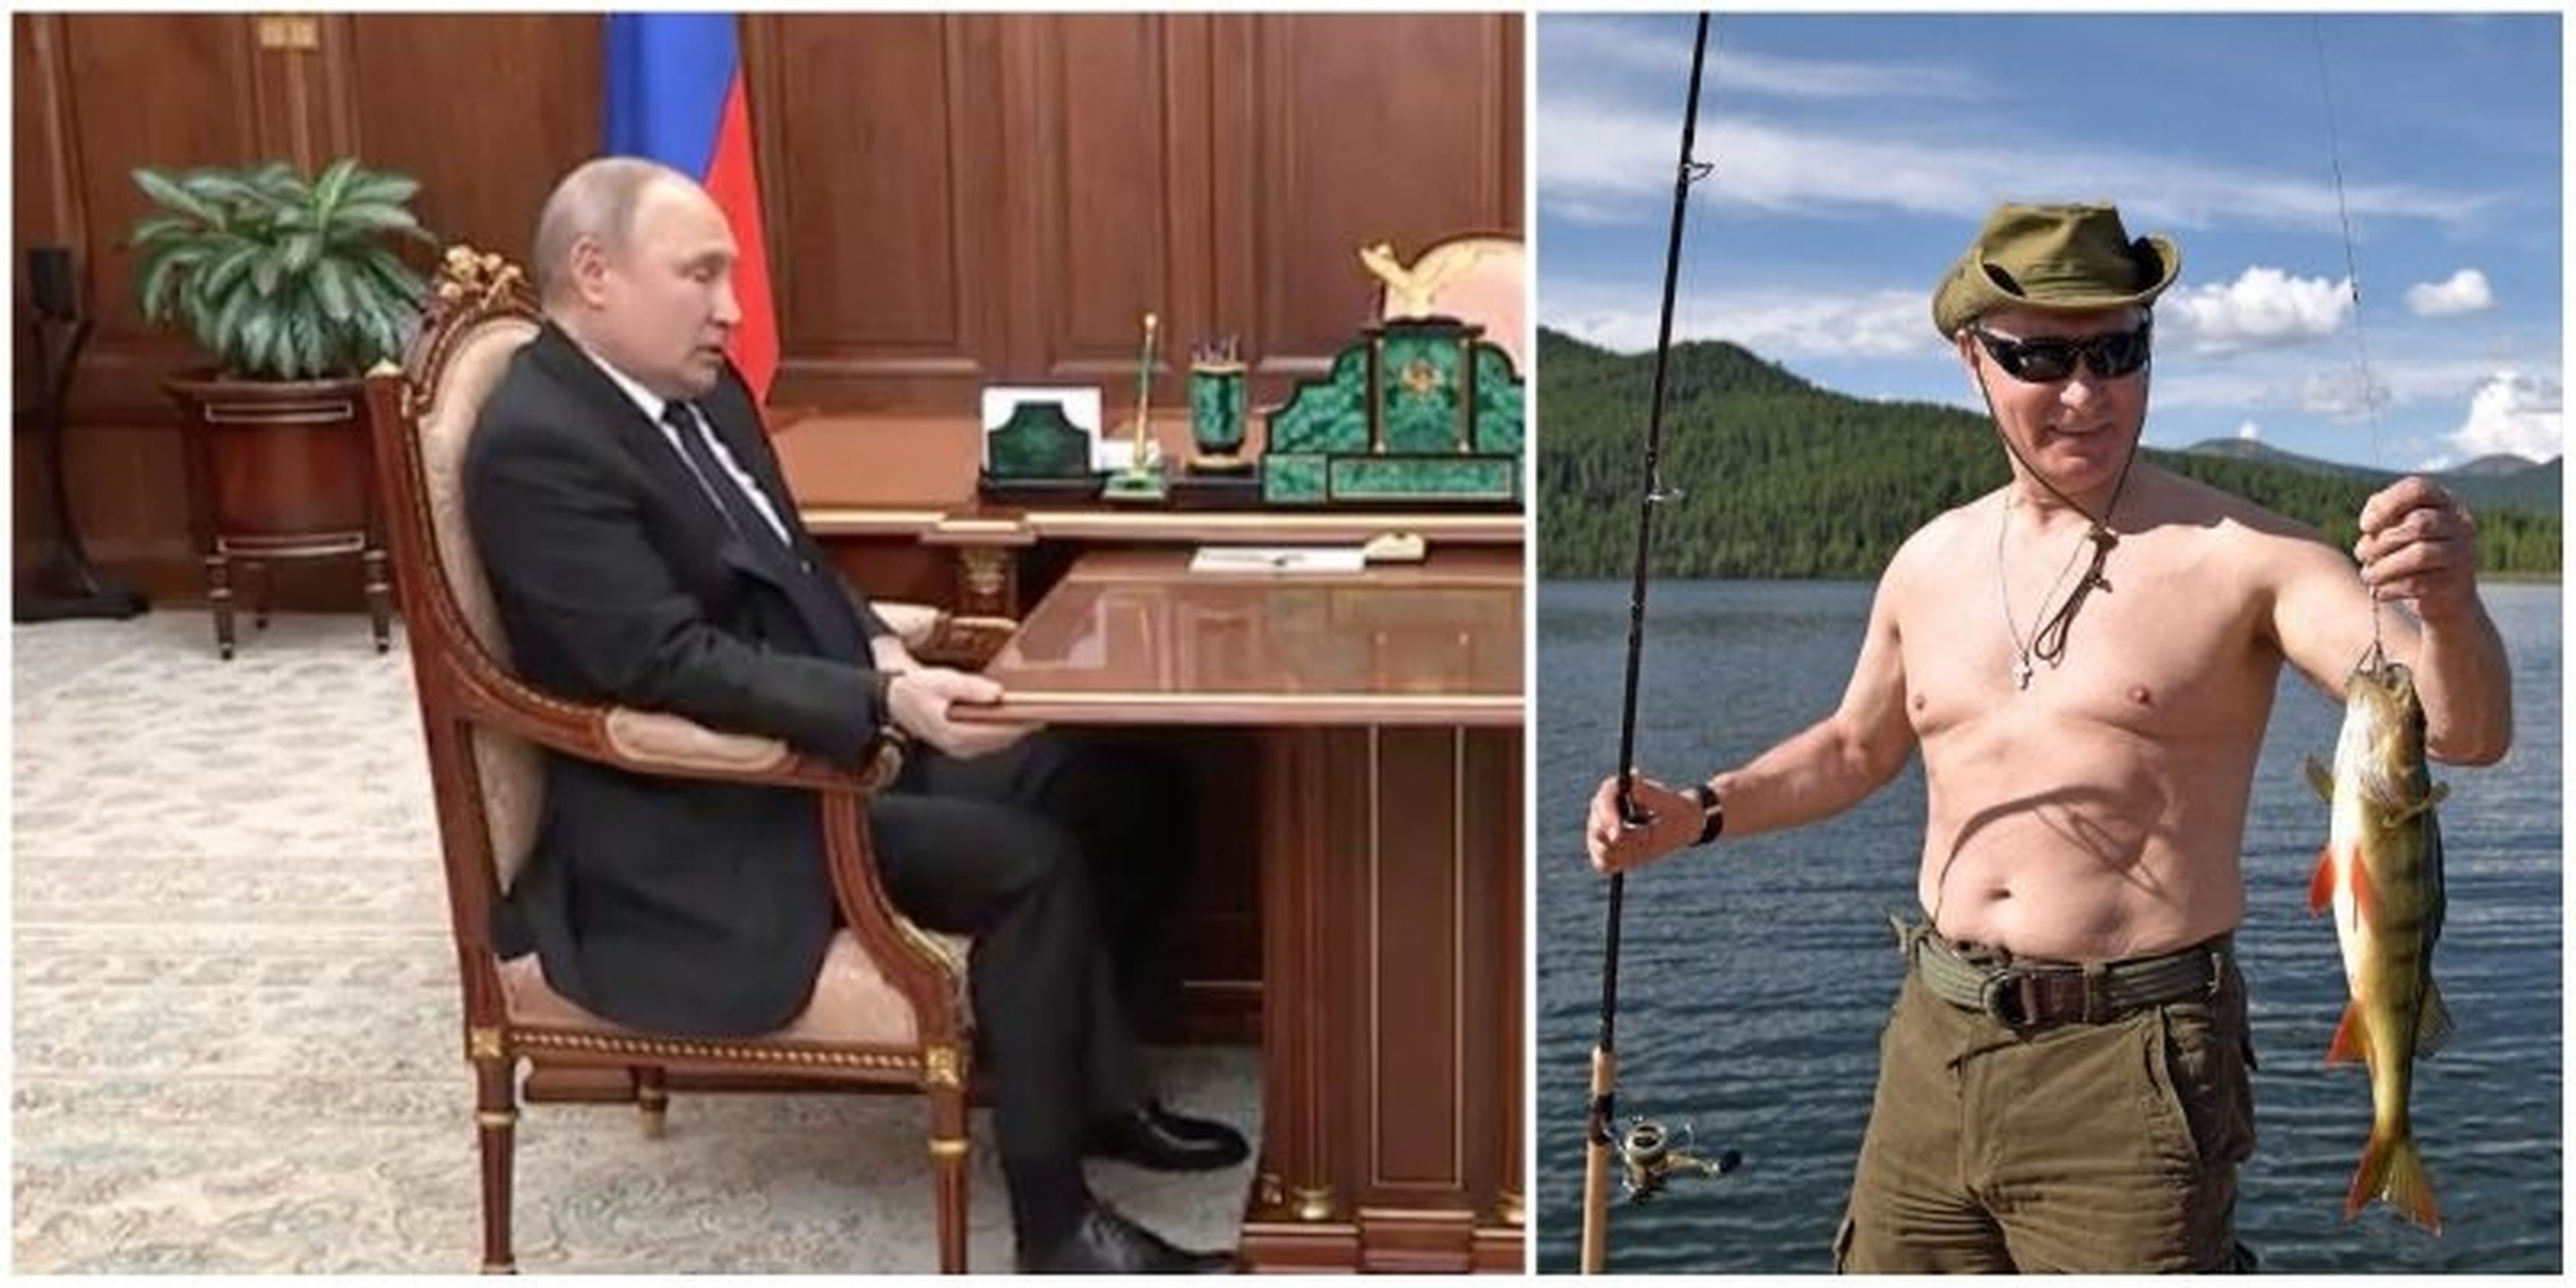 Imágenes de Vladímir Putin, presidente de Rusia, tomadas en diferentes momentos.